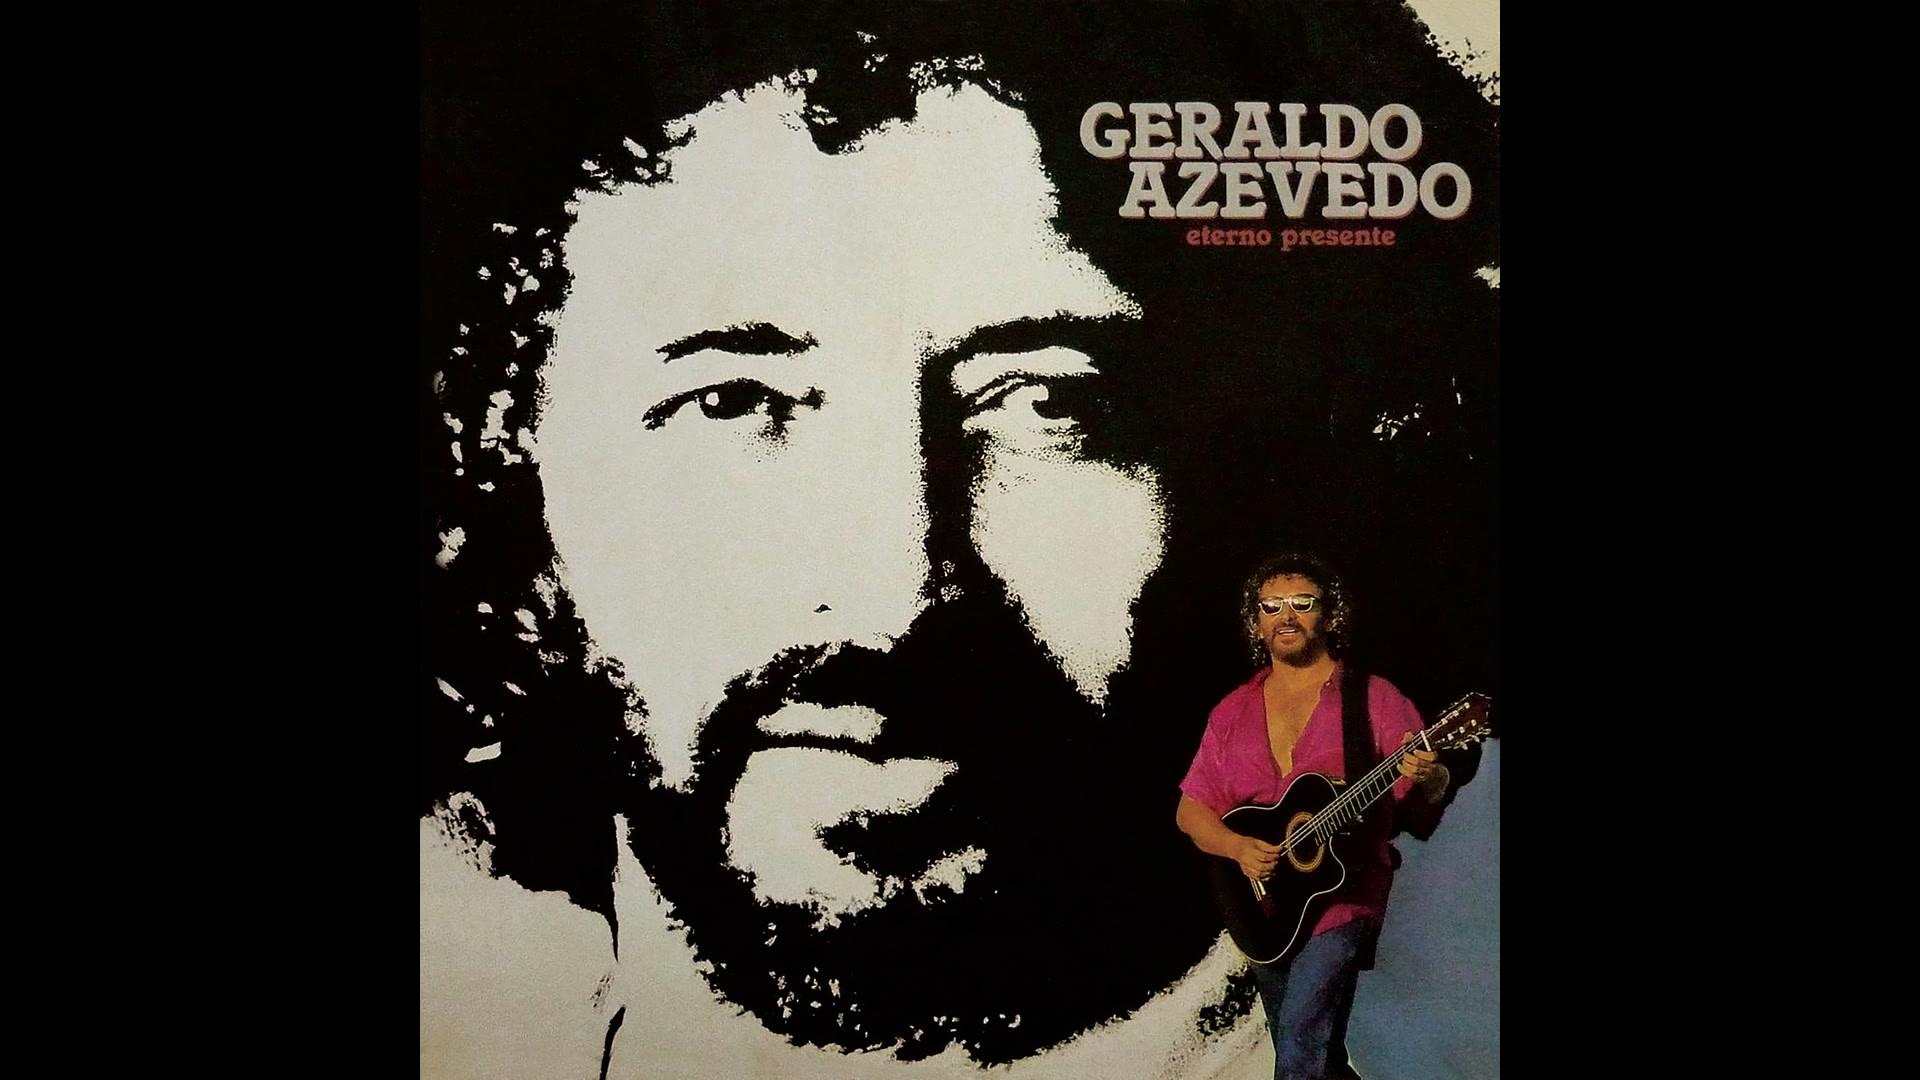 Geraldo Azevedo - Pega Fogo, Coração (Pseudo Video)